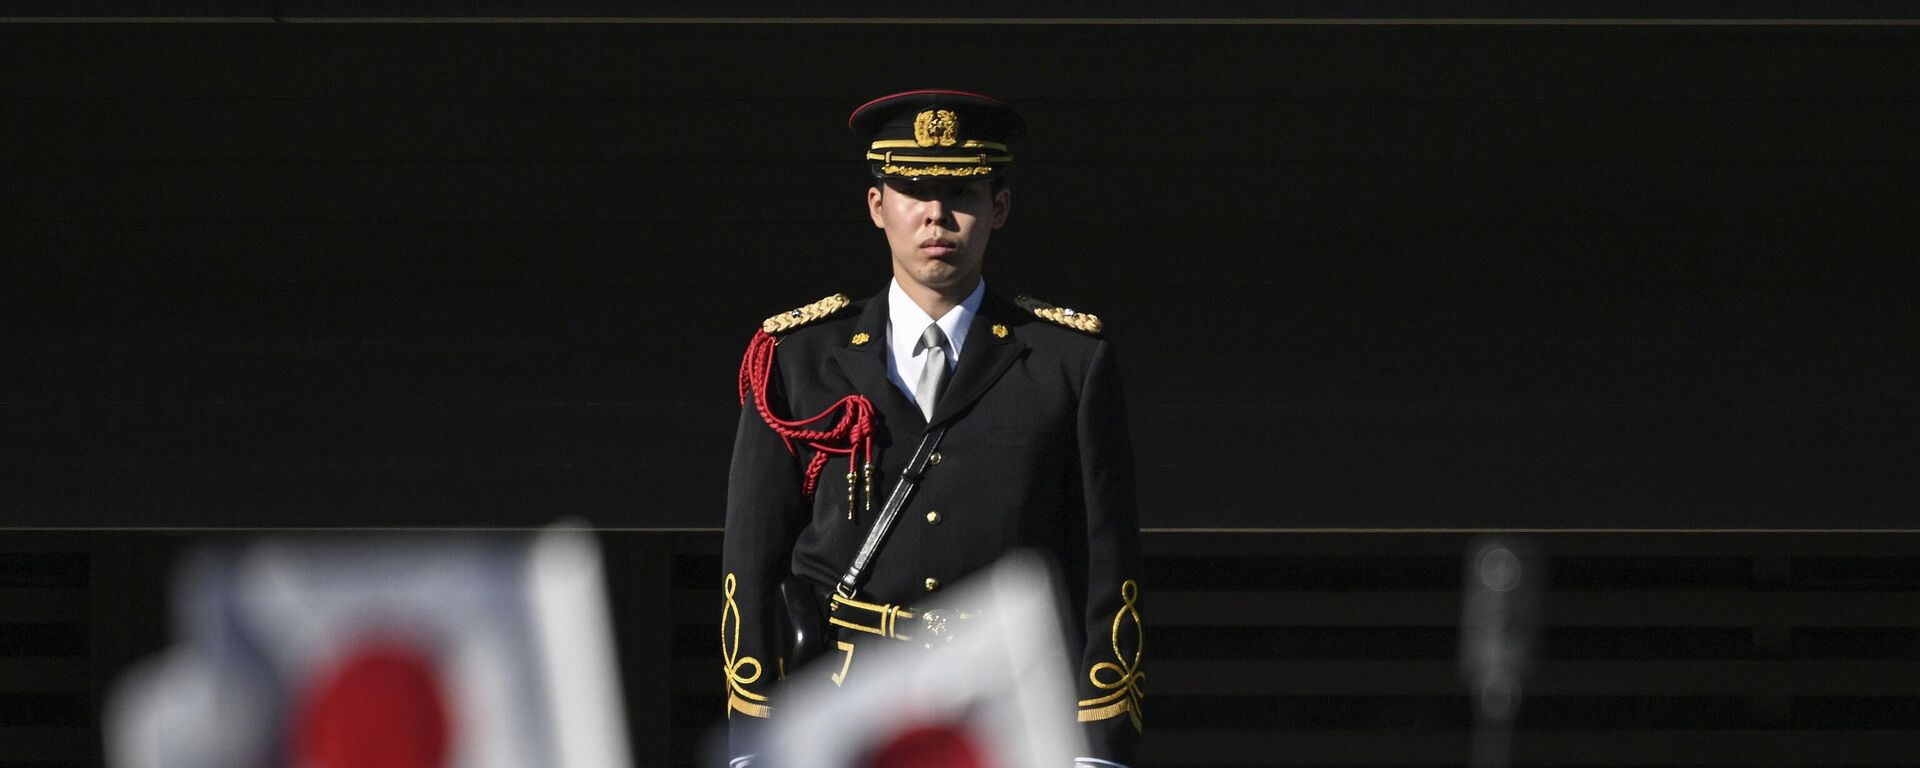 Simpatizantes agitam bandeiras na frente de guarda de membros da família real do Japão durante a tradicional cerimônia de saudação de ano-novo no Palácio Imperial, em Tóquio. Japão, 2 de janeiro de 2023 - Sputnik Brasil, 1920, 09.05.2023